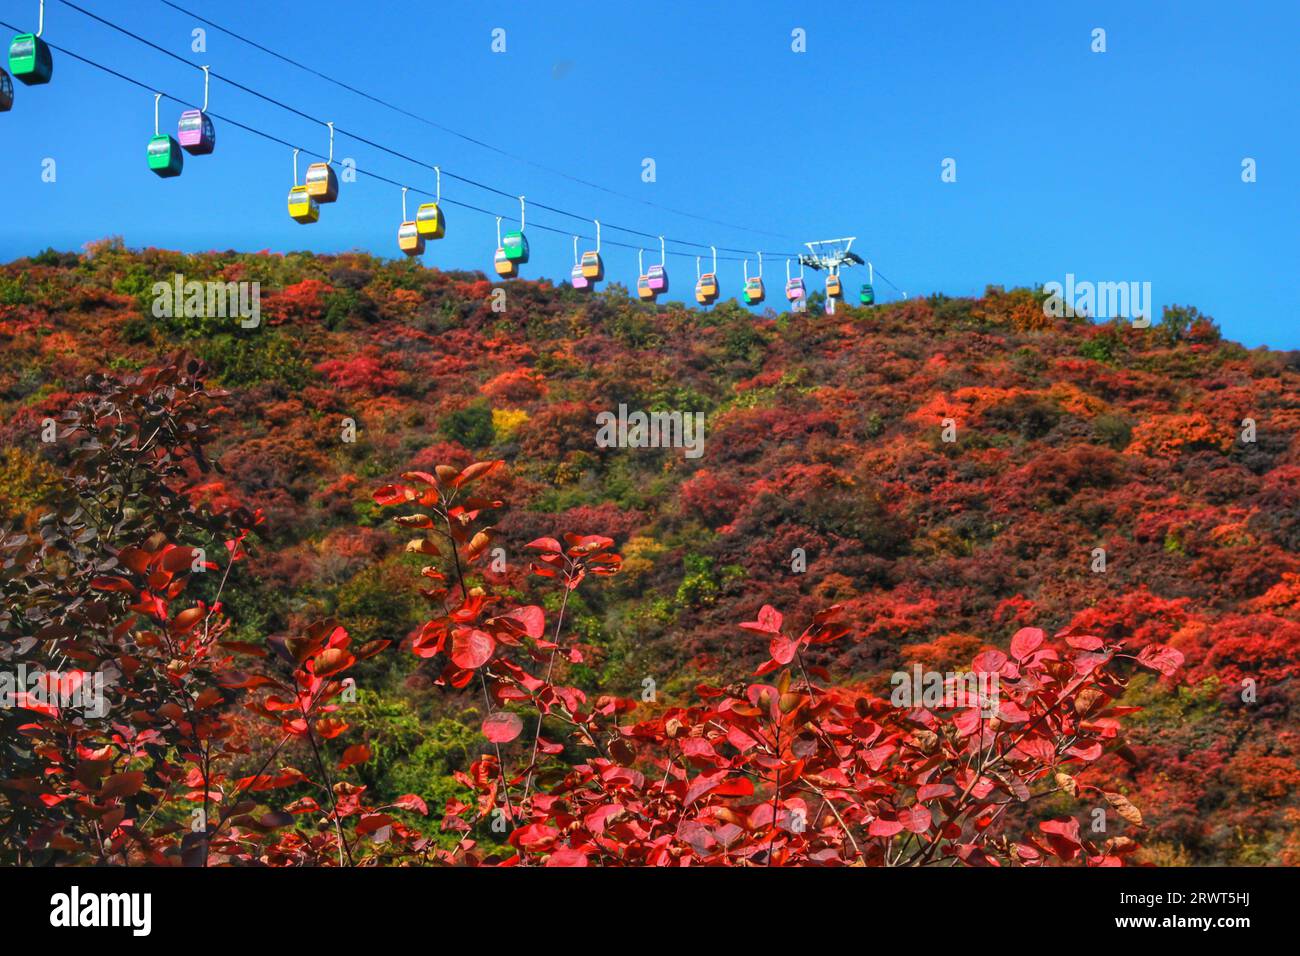 Cattura la magia della natura mentre le vibranti erbe rosse e verdi creano incredibili contrasti sullo sfondo delle maestose montagne cinesi Foto Stock